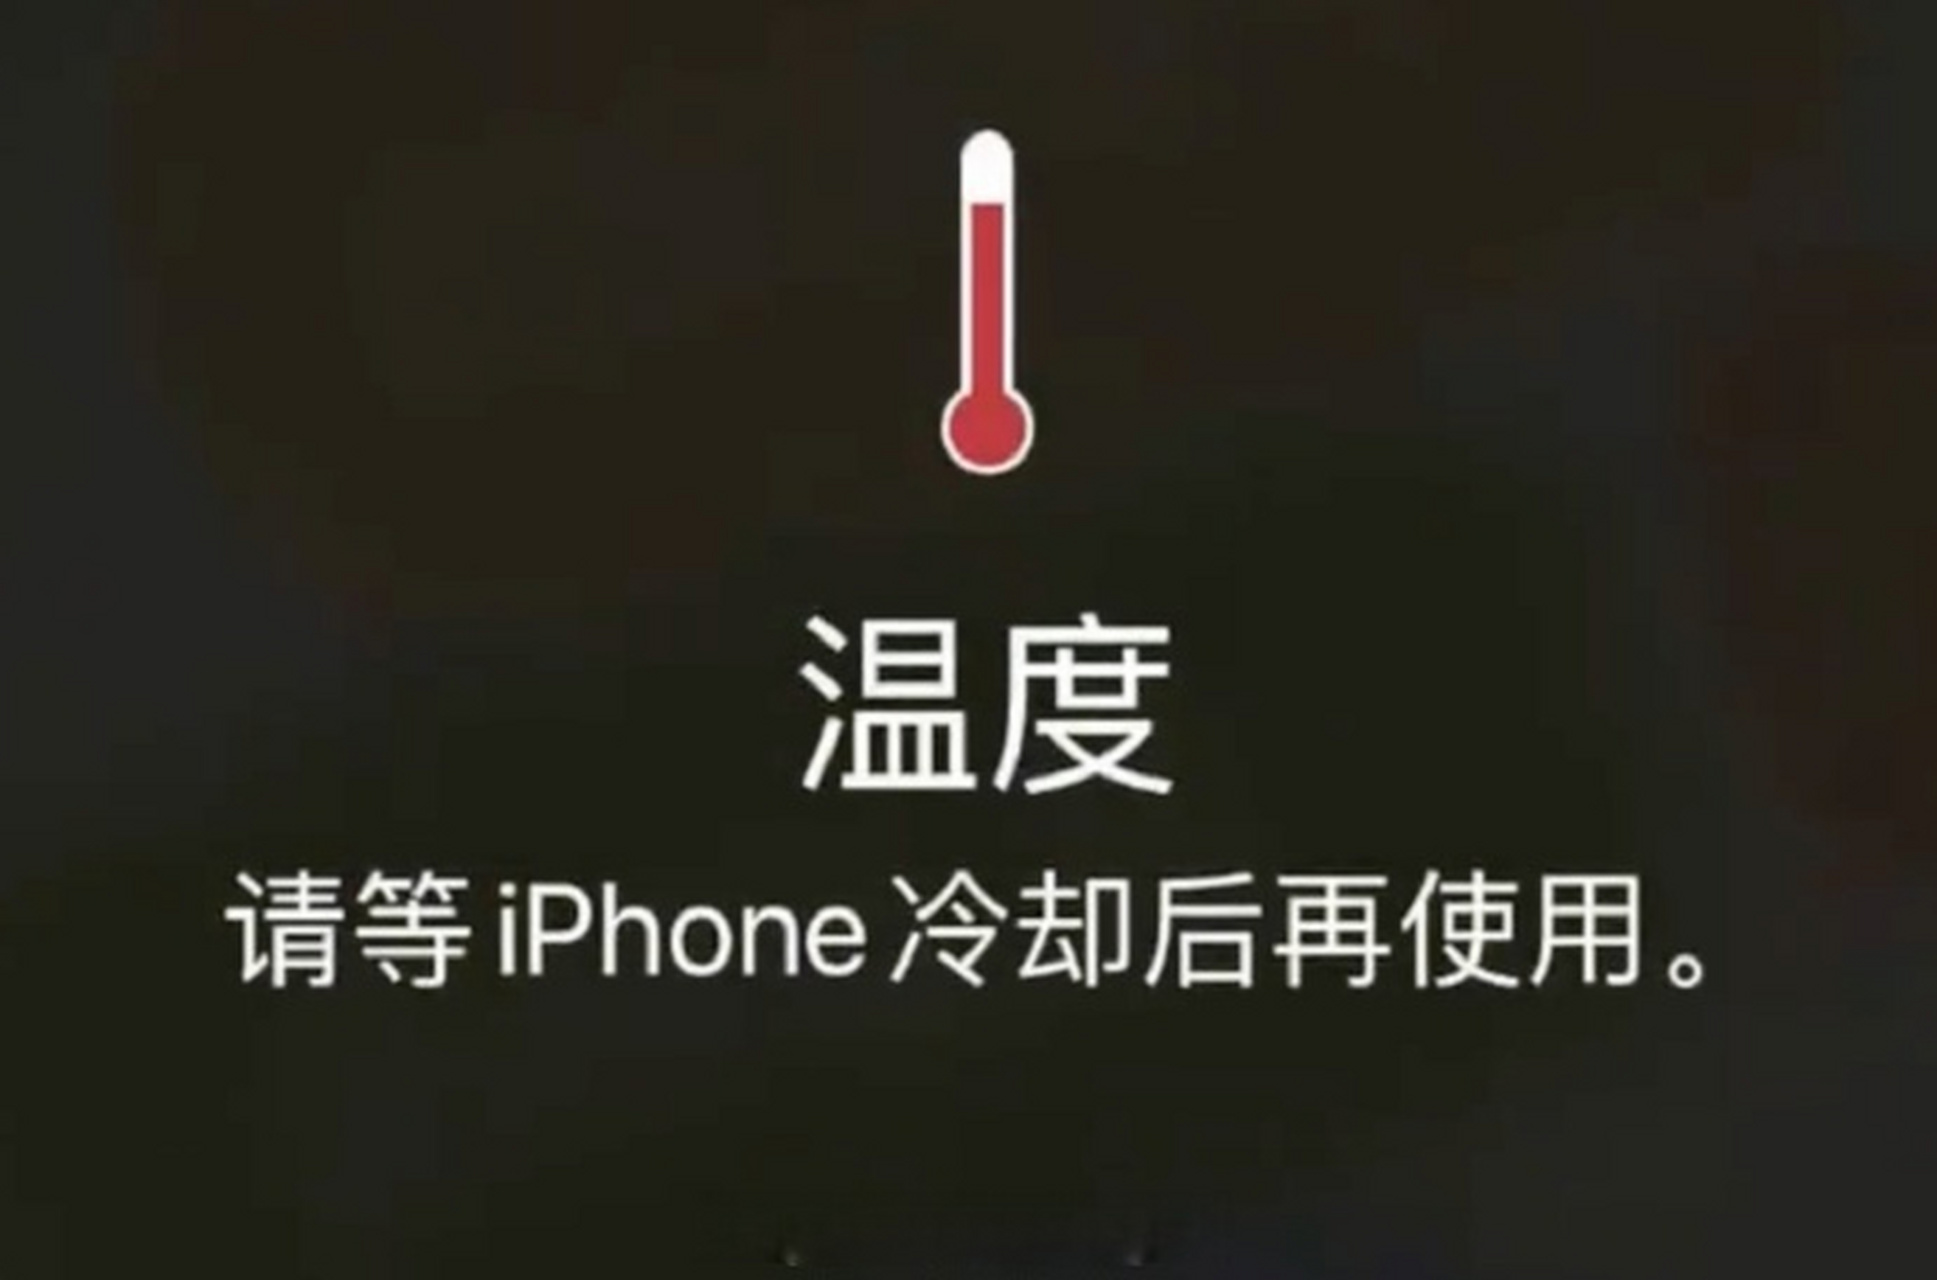 苹果客服对此给出了以下解释和建议: 手机发烫和入夏气温高有一定关系